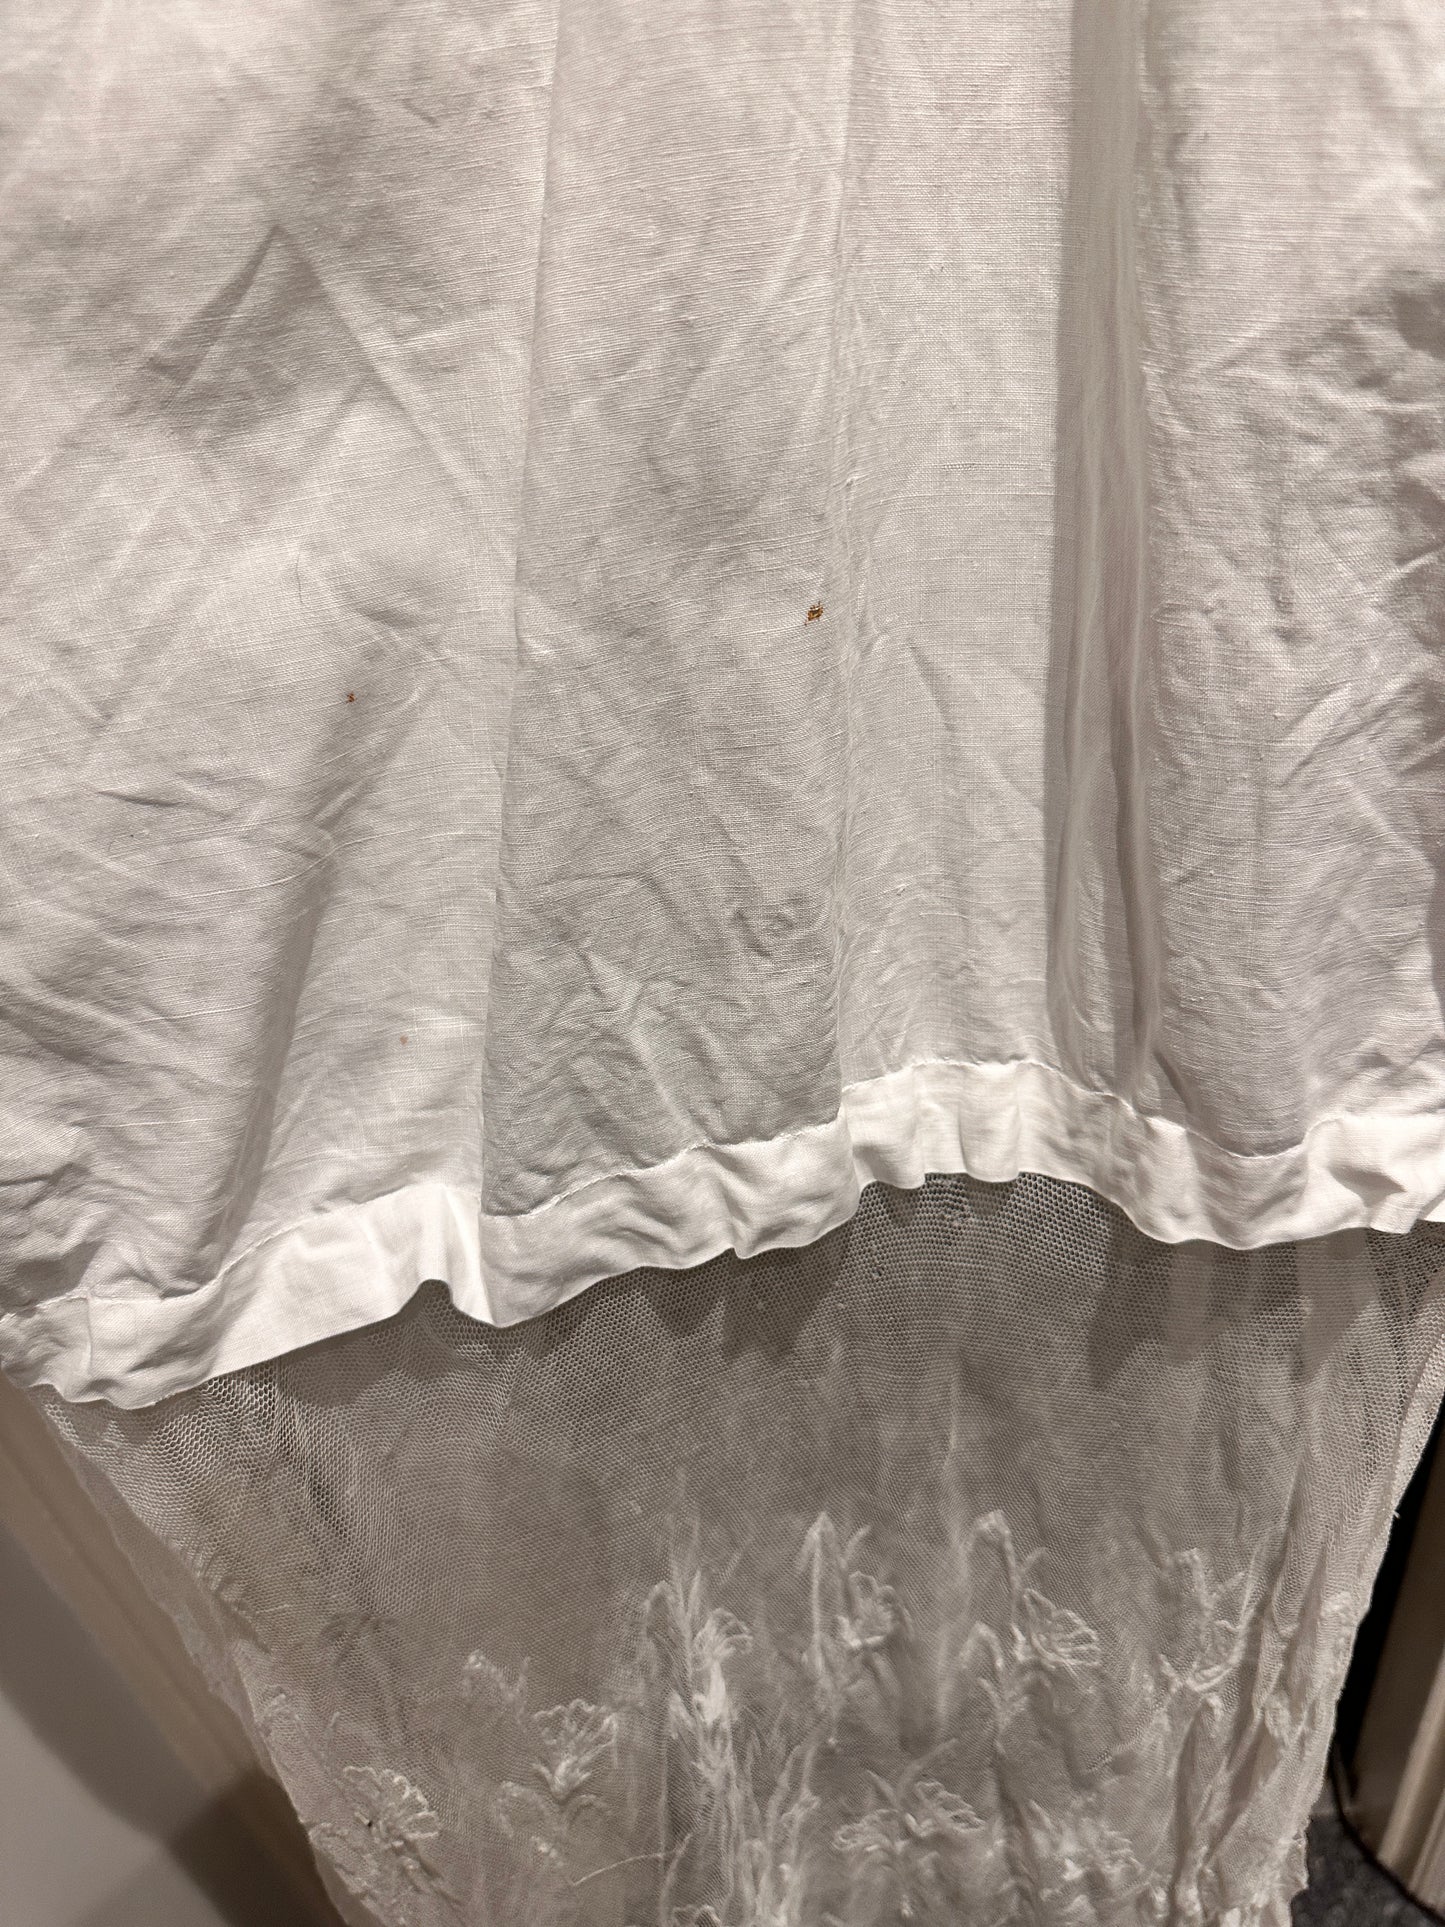 Catholic baptismal gown shawl